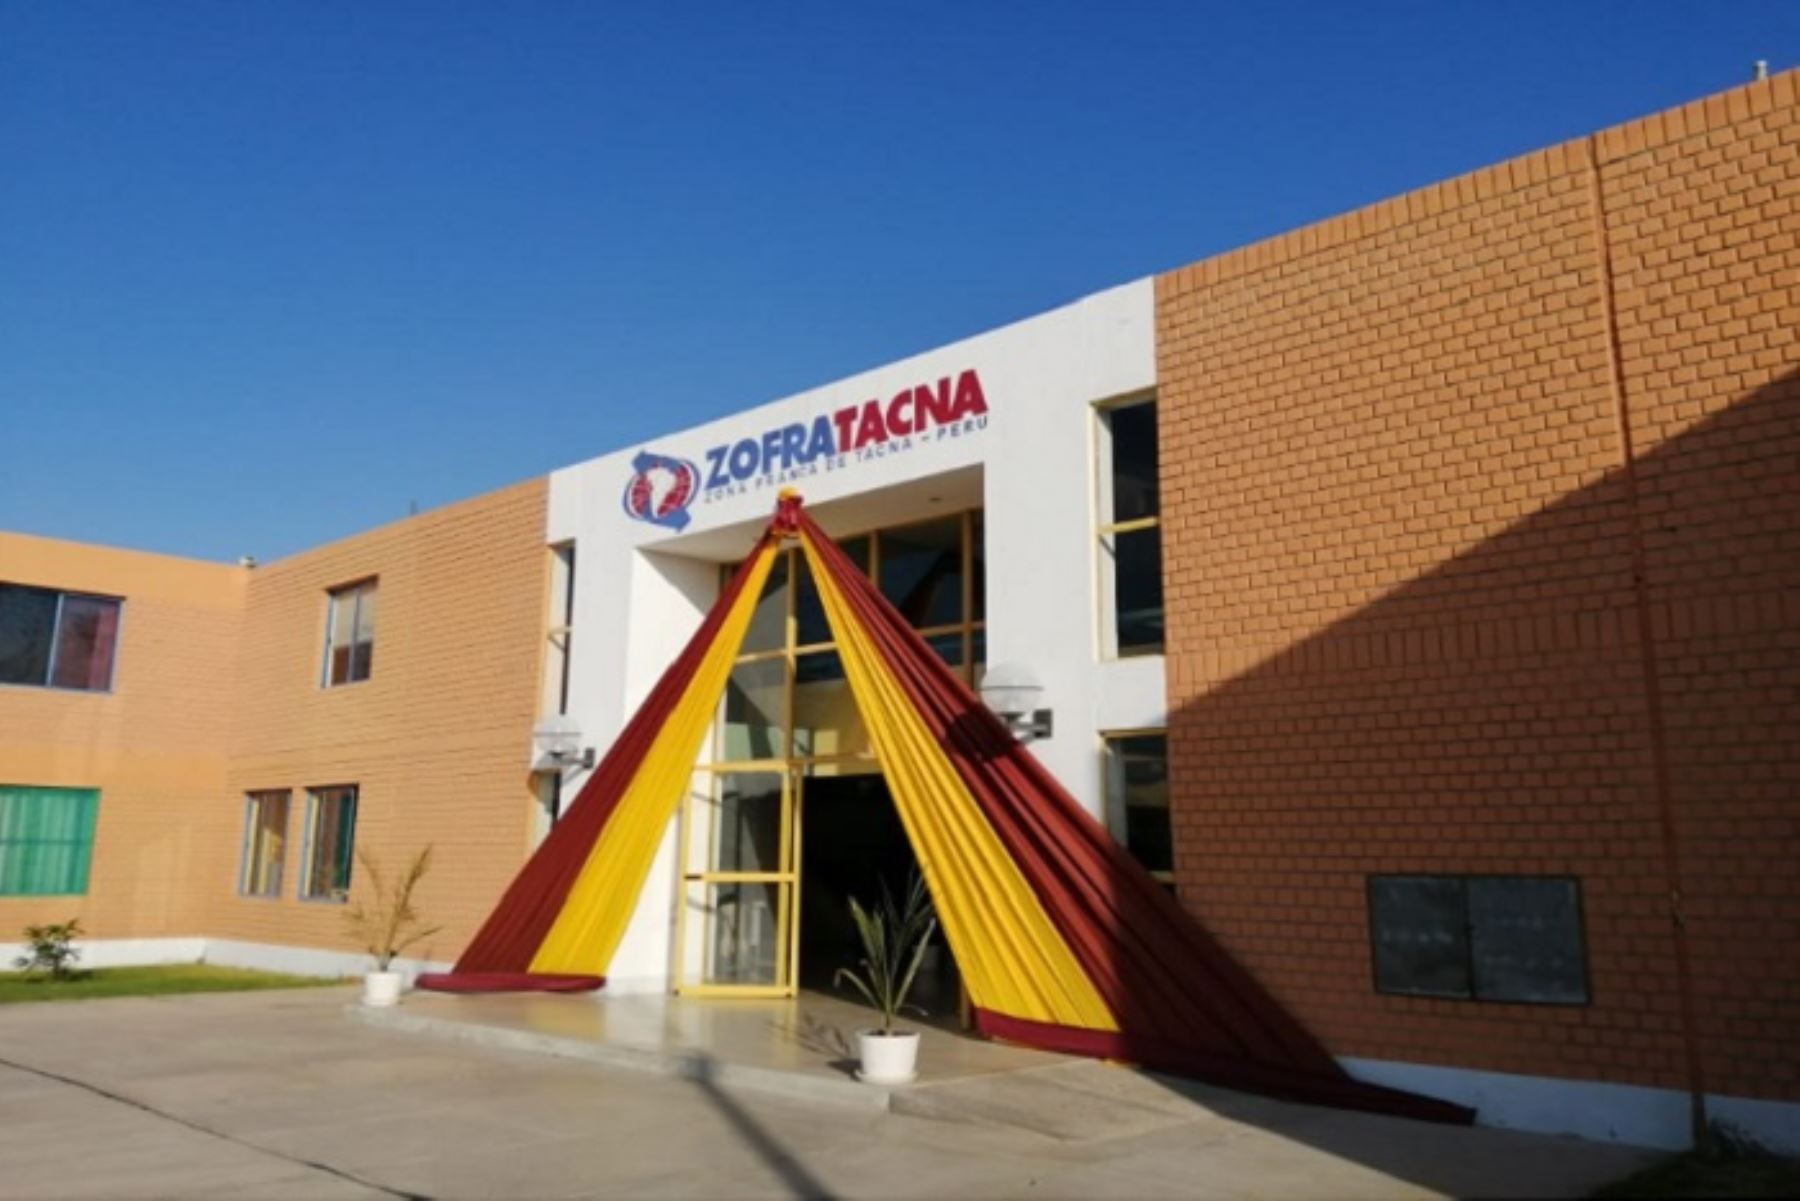 Zofratacna aporttó US $ 42,3 millones en la construcción y equipamiento del Complejo de Zofratacna, carretera Costanera, remodelación del estadio Jorge Basadre Grohman, carretera Tacna-Tarata-Candarave-Umalso, entre otras. ANDINA/Difusión